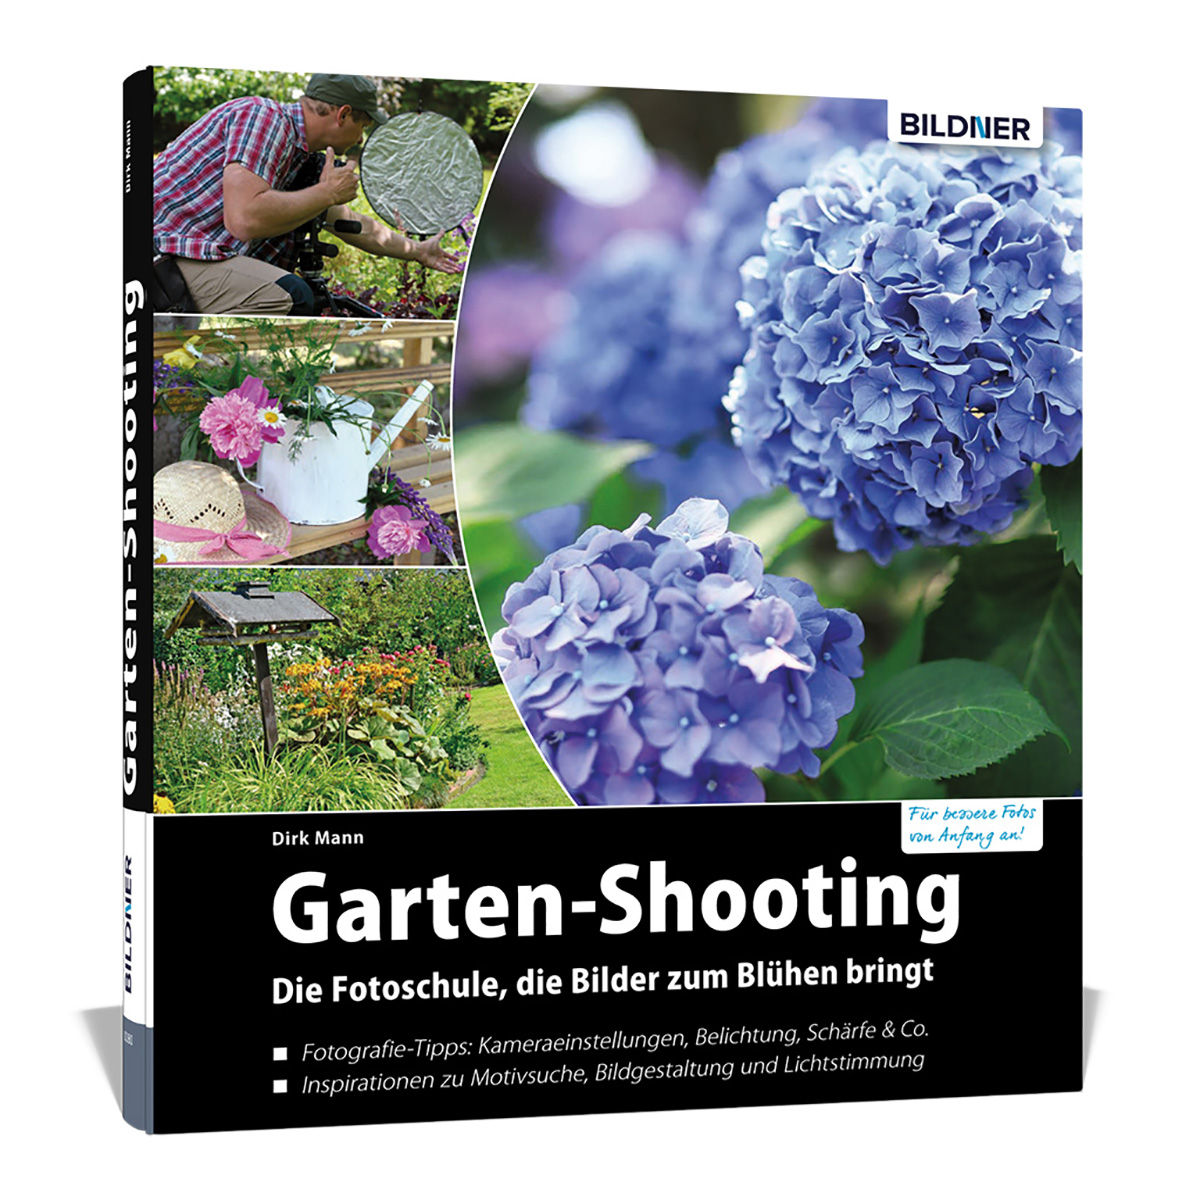 Garten-Shooting - Die bringt Bilder zum die Fotoschule, Blühen